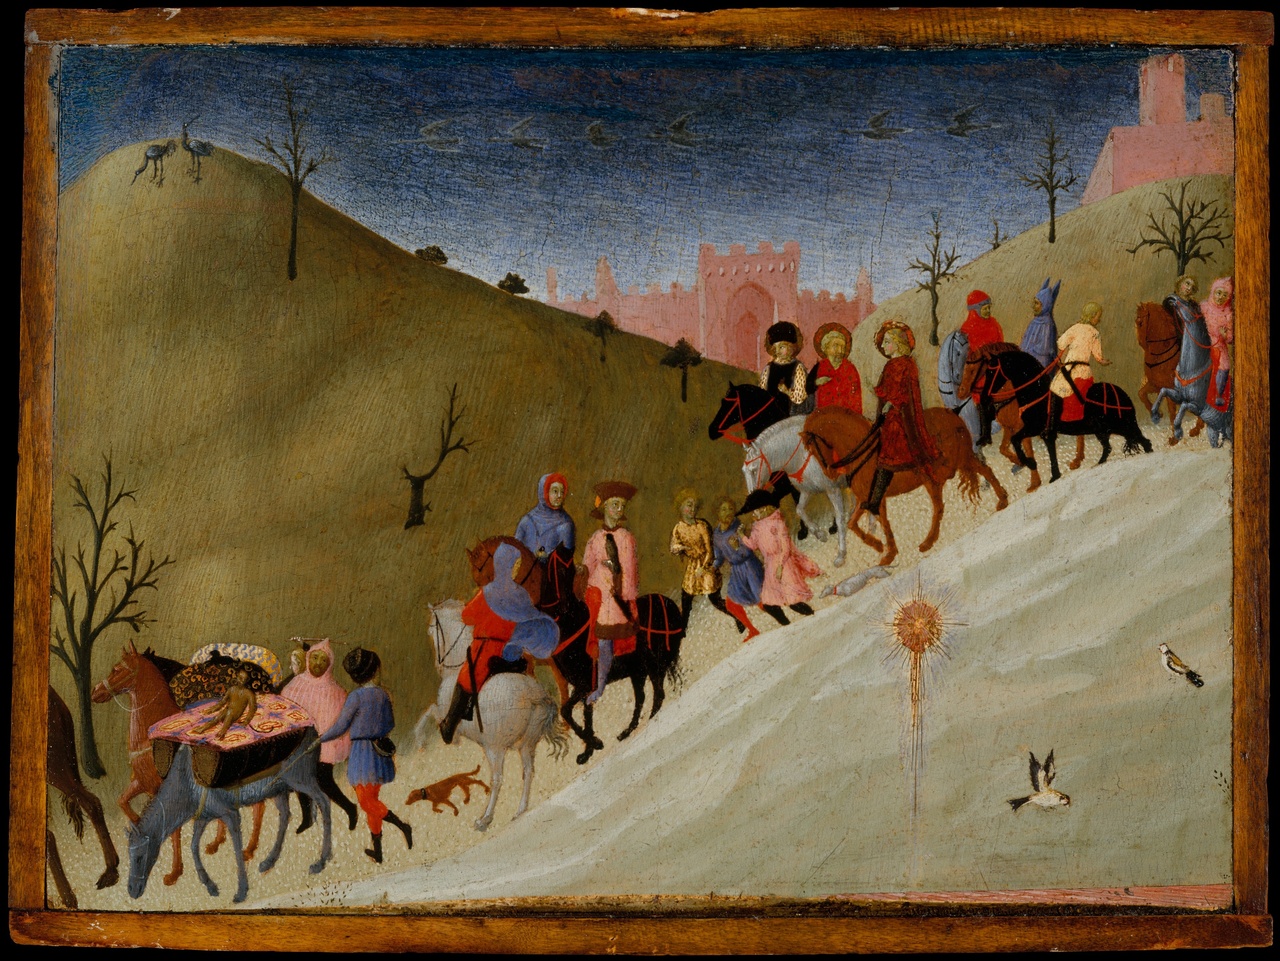 Sassetta (baptized name Stefano di Giovanni), “The Journey of the Magi,” ca. 1433–35